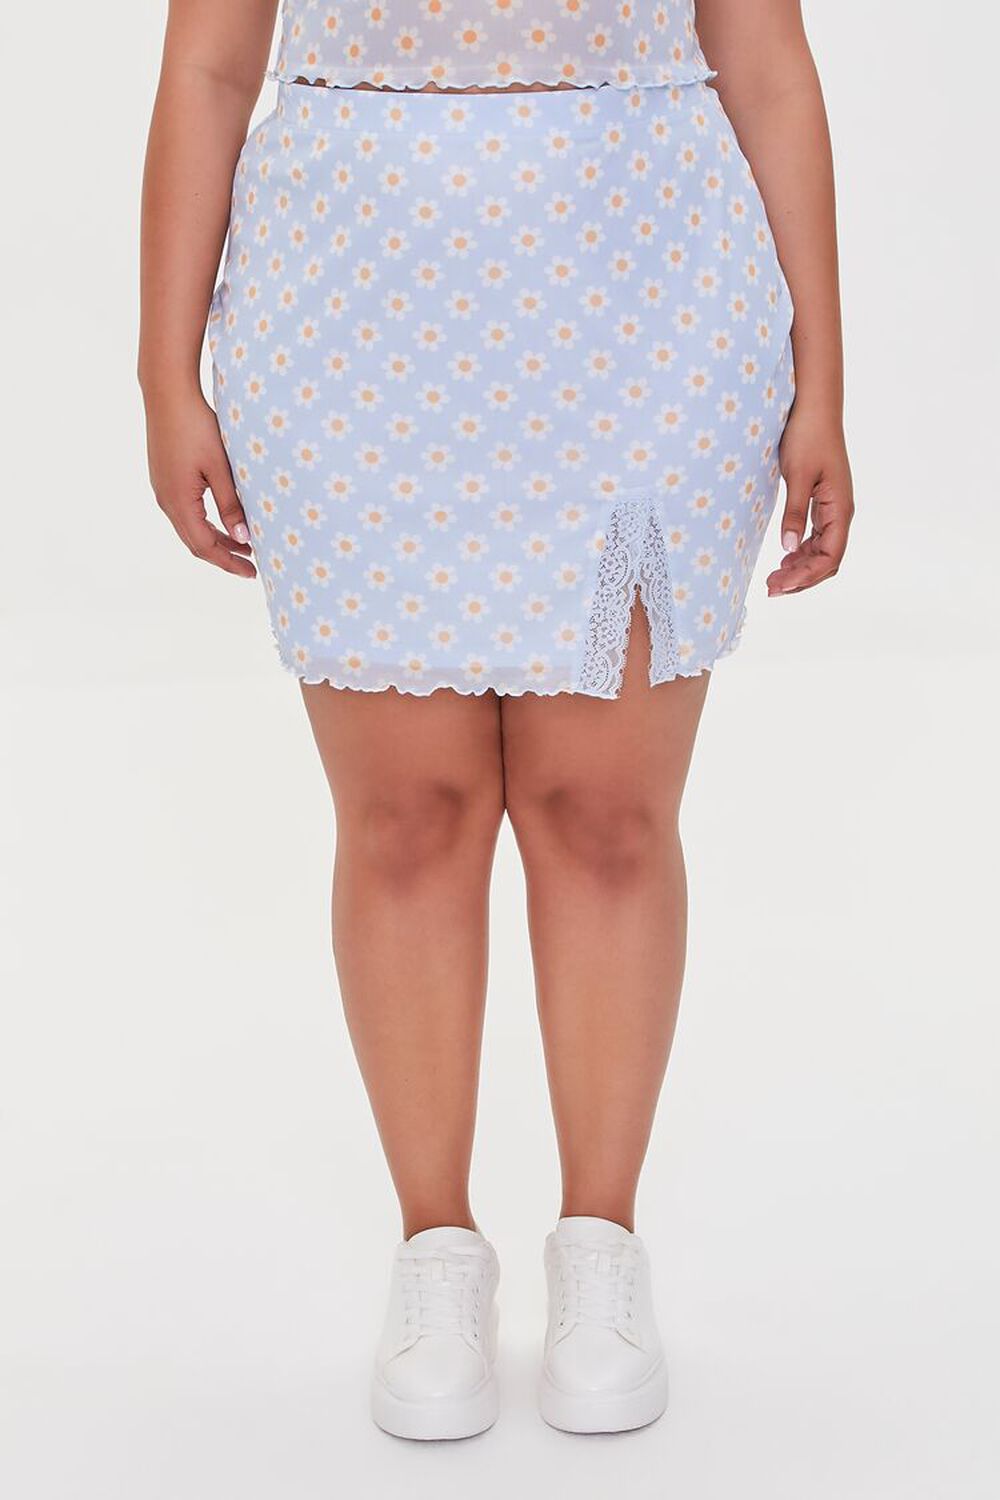 Plus Size Floral Print Mini Skirt, image 2